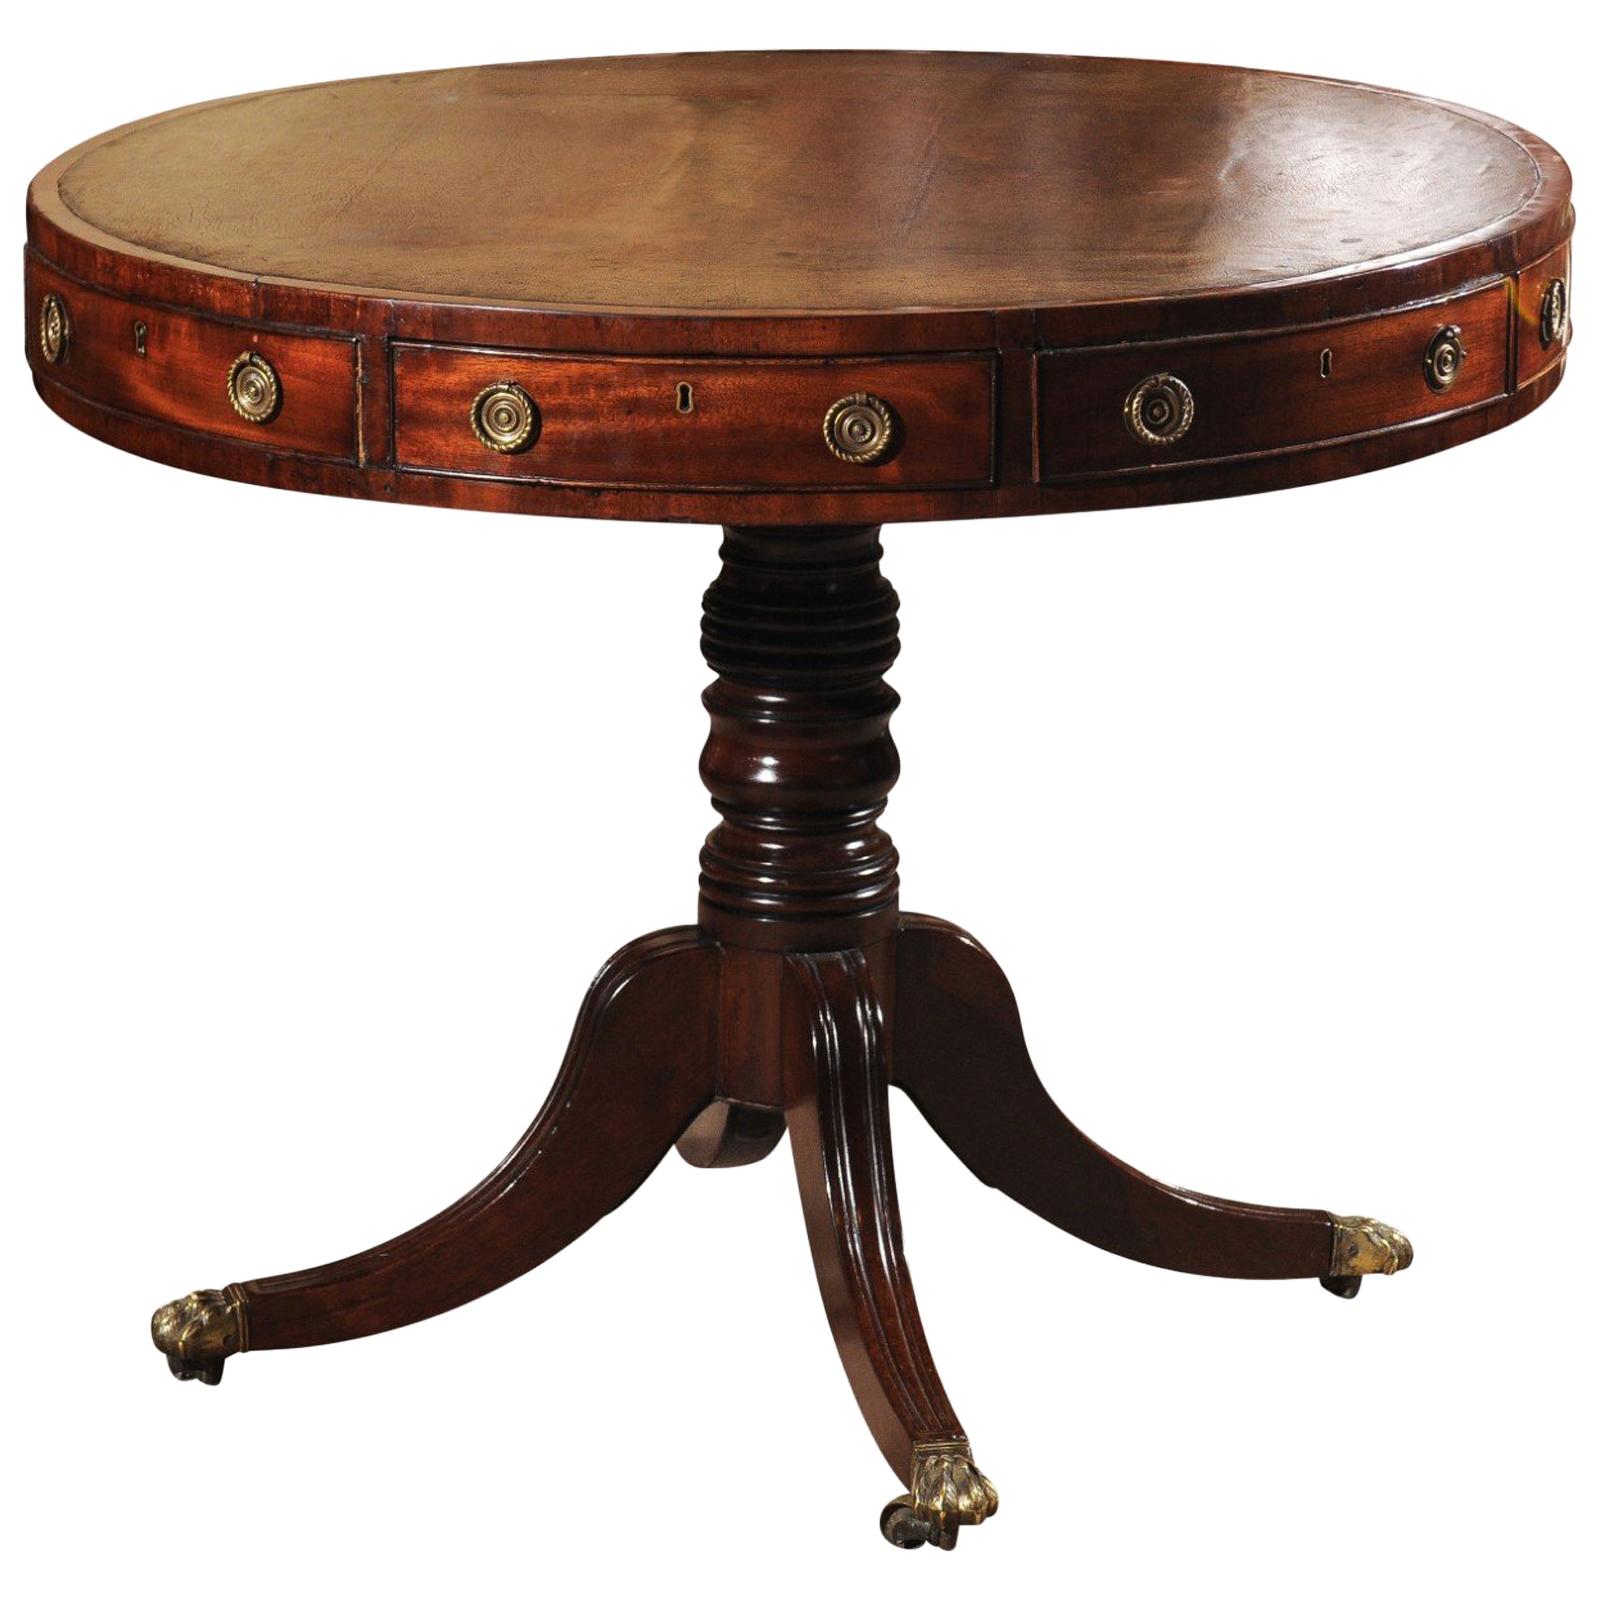 Early 19th Century English Regency Mahogany Drum Table